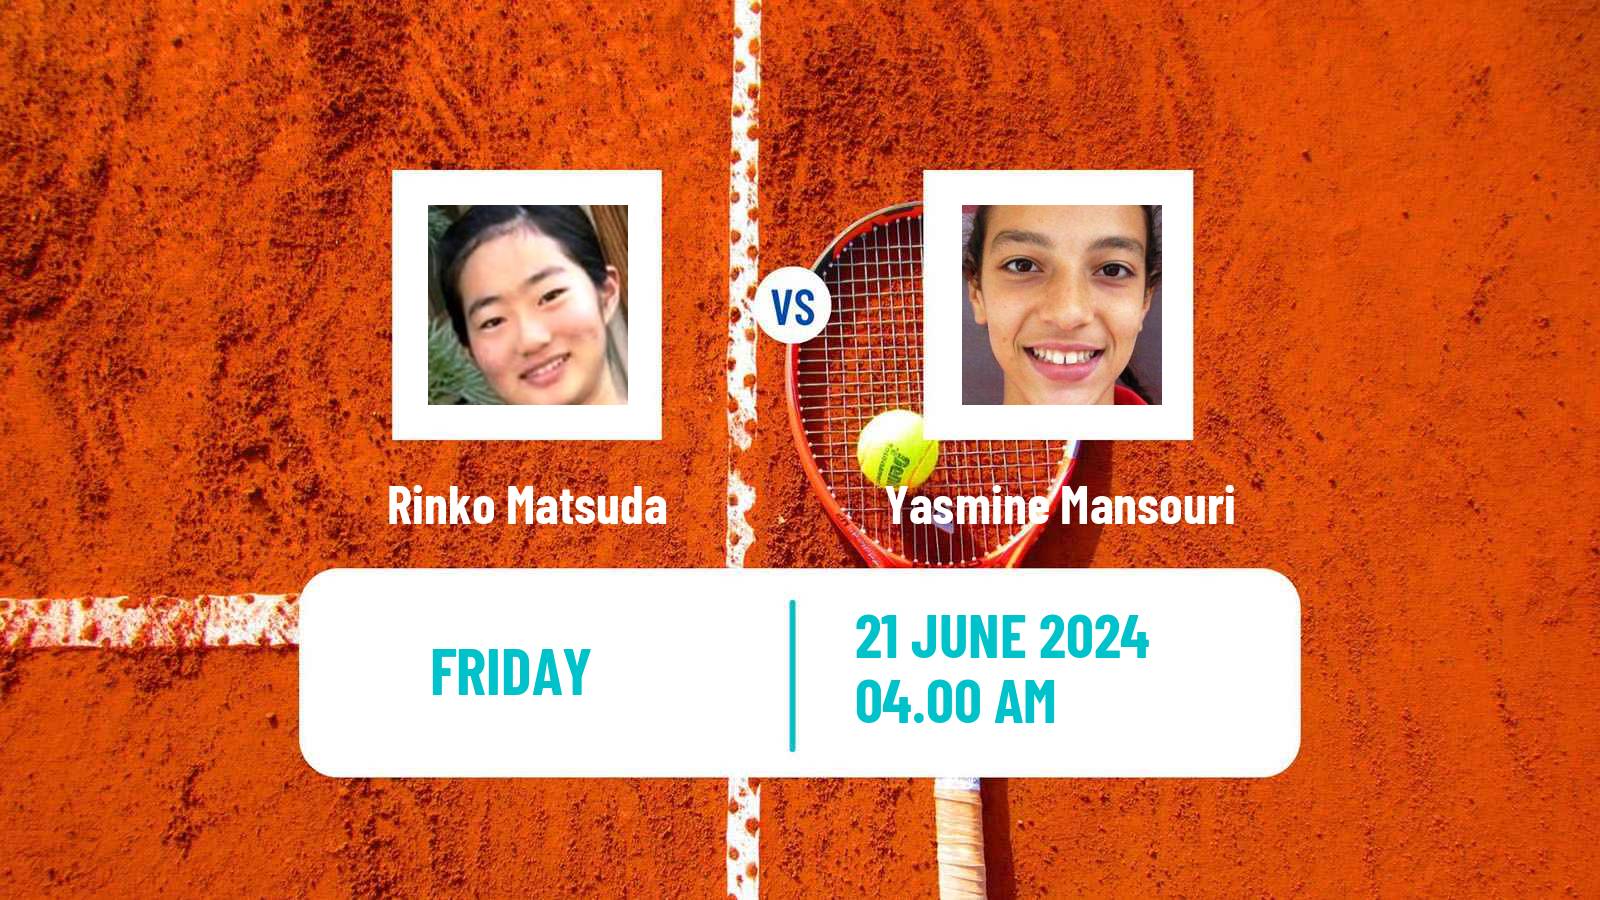 Tennis ITF W15 Monastir 23 Women Rinko Matsuda - Yasmine Mansouri